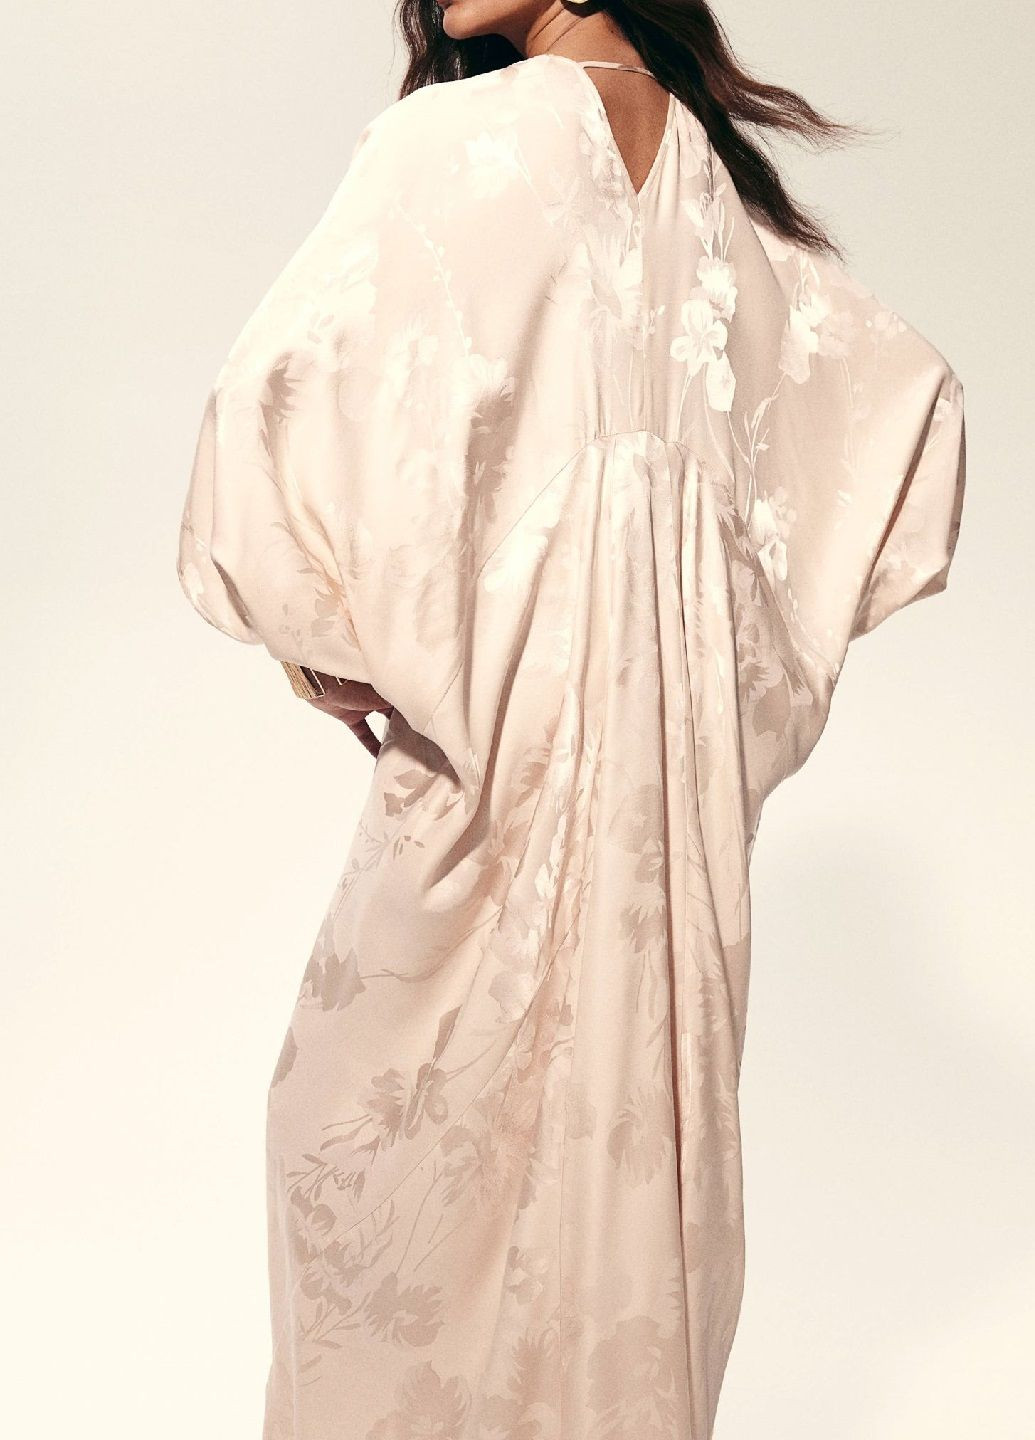 Світло-бежева святковий сукня H&M з квітковим принтом